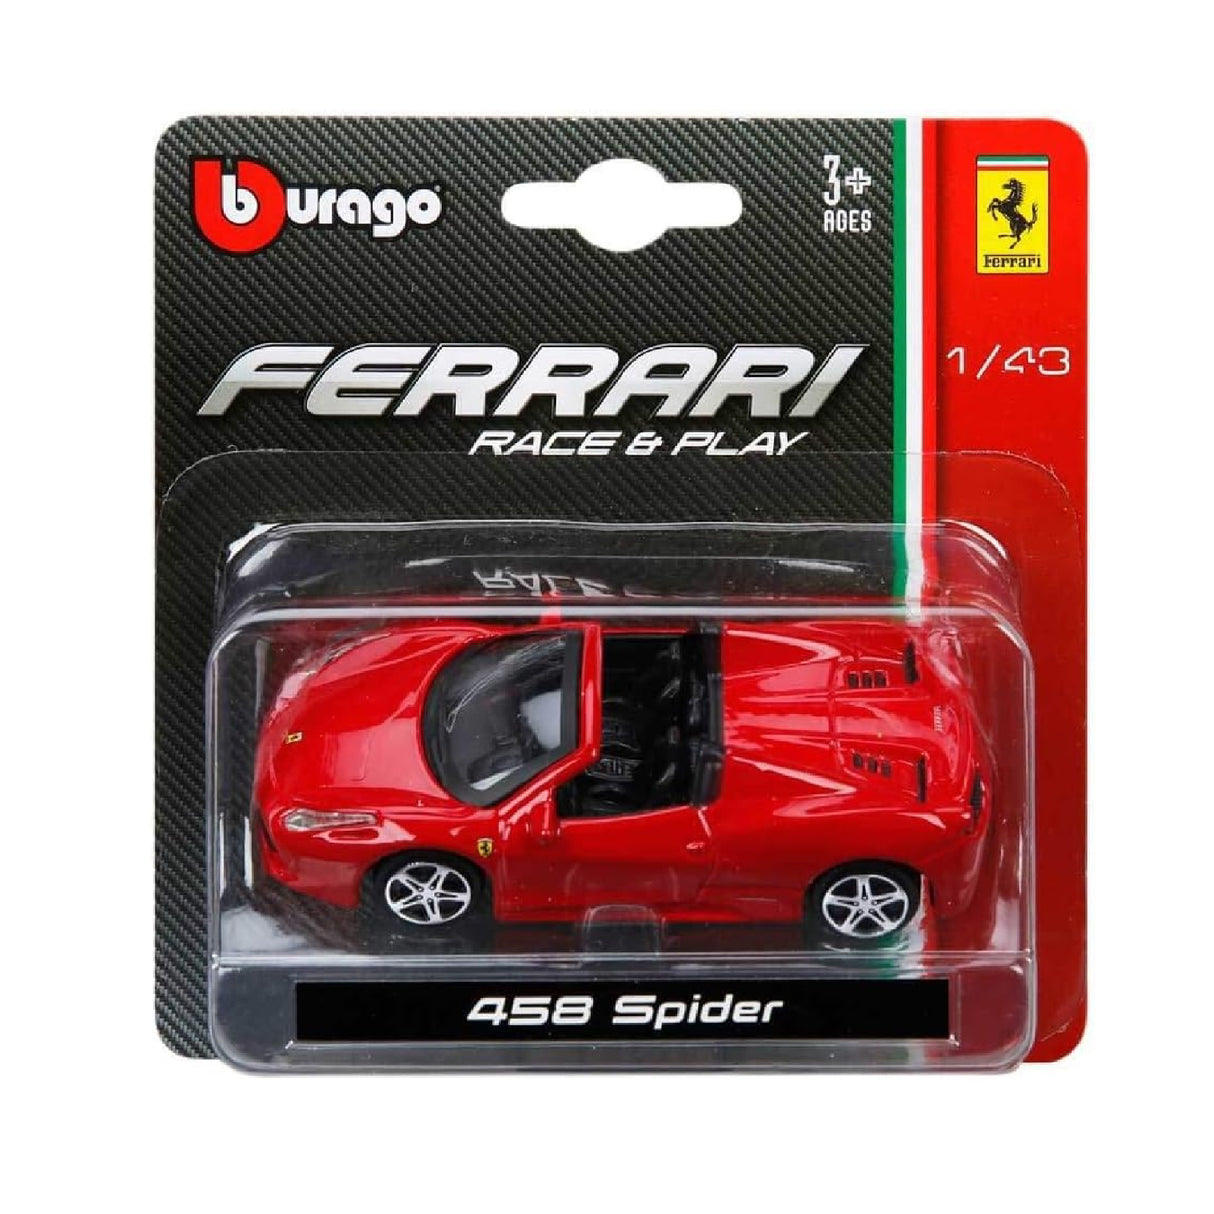 Bburago Ferrari 250 Testa Rossa 1:43 Assorted